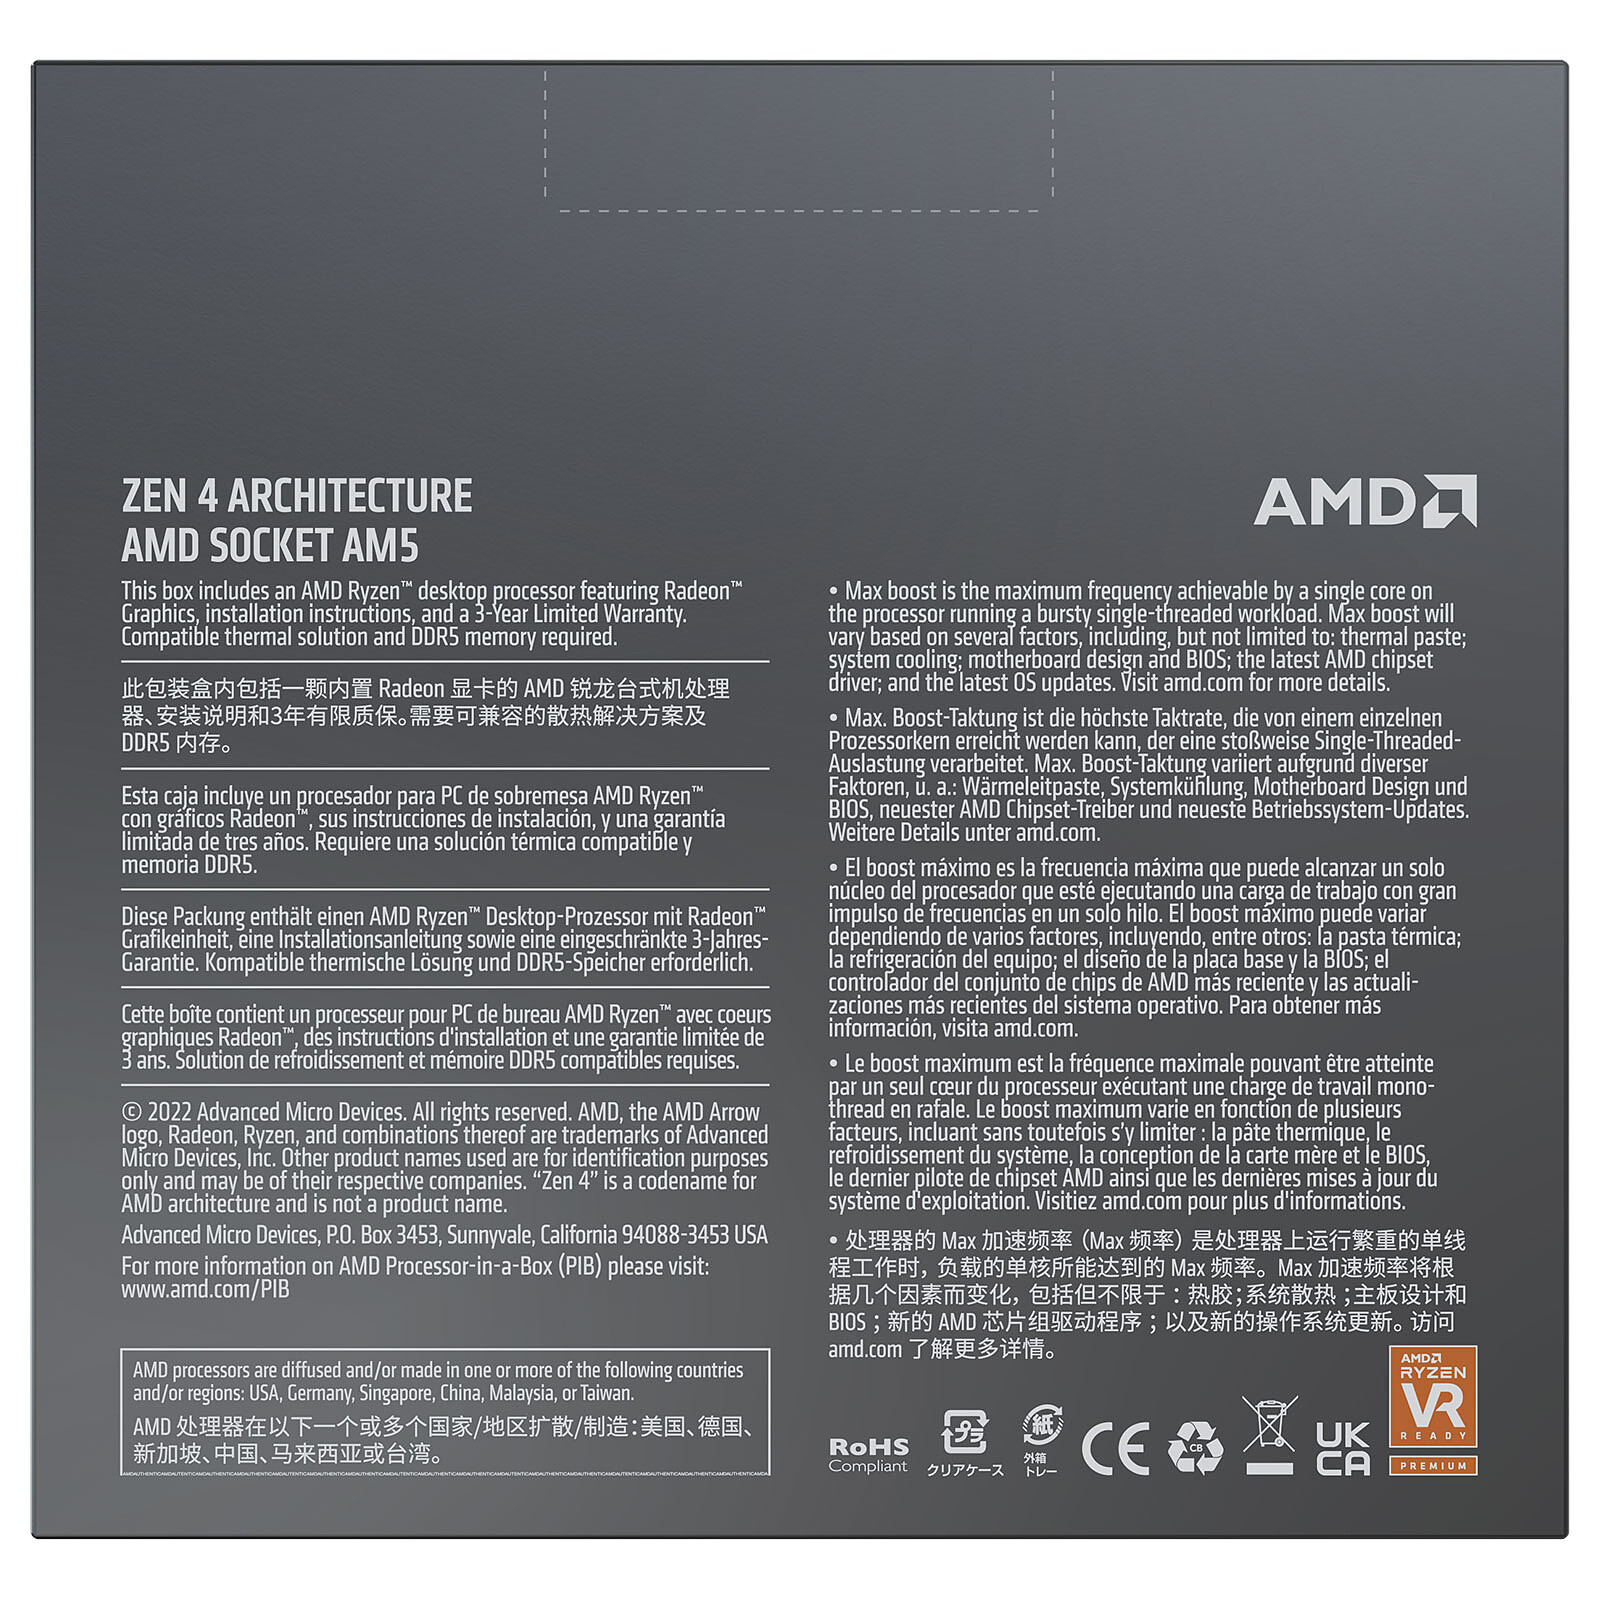 Test AMD Ryzen 9 7950X : un CPU ultra rapide dans toutes les